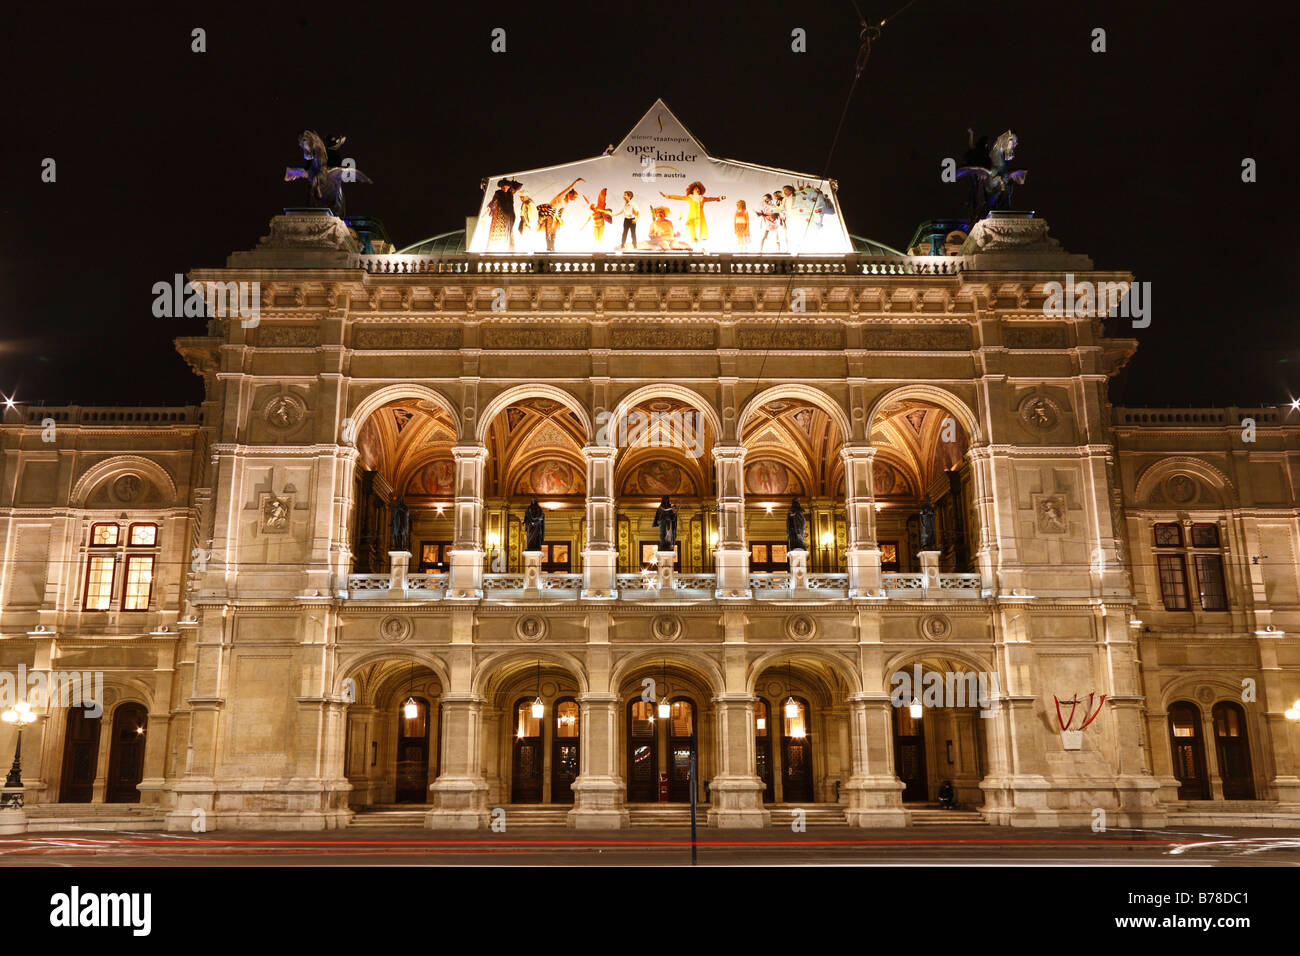 L'opéra, l'Opéra National, Vienne, Autriche, Europe Banque D'Images